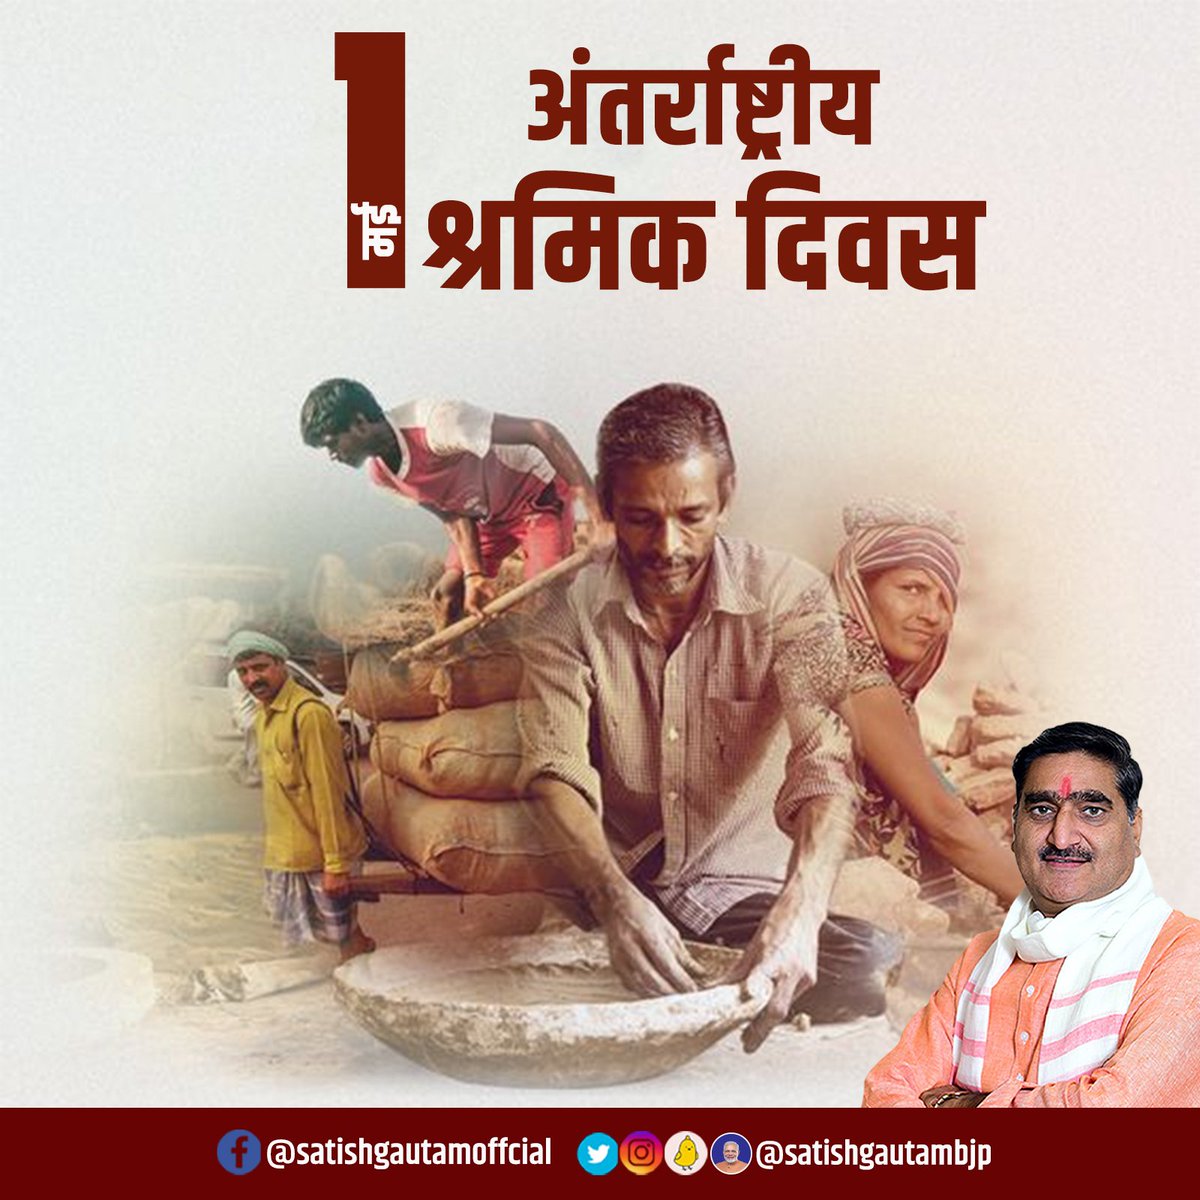 श्रमेव जयते! अपने अथक परिश्रम से राष्ट्र को निरन्तर प्रगति के पथ पर अग्रसर रखने वाले सभी श्रमिक भाइयों को #LabourDay की हार्दिक शुभकामनाएं। राष्ट्रनिर्माण में आपका योगदान सर्वोपरि है। मैं सभी श्रमिक बन्धुओं को सादर अभिनन्दन करता हूँ। #Aligarh #अलीगढ़ #LabourDay